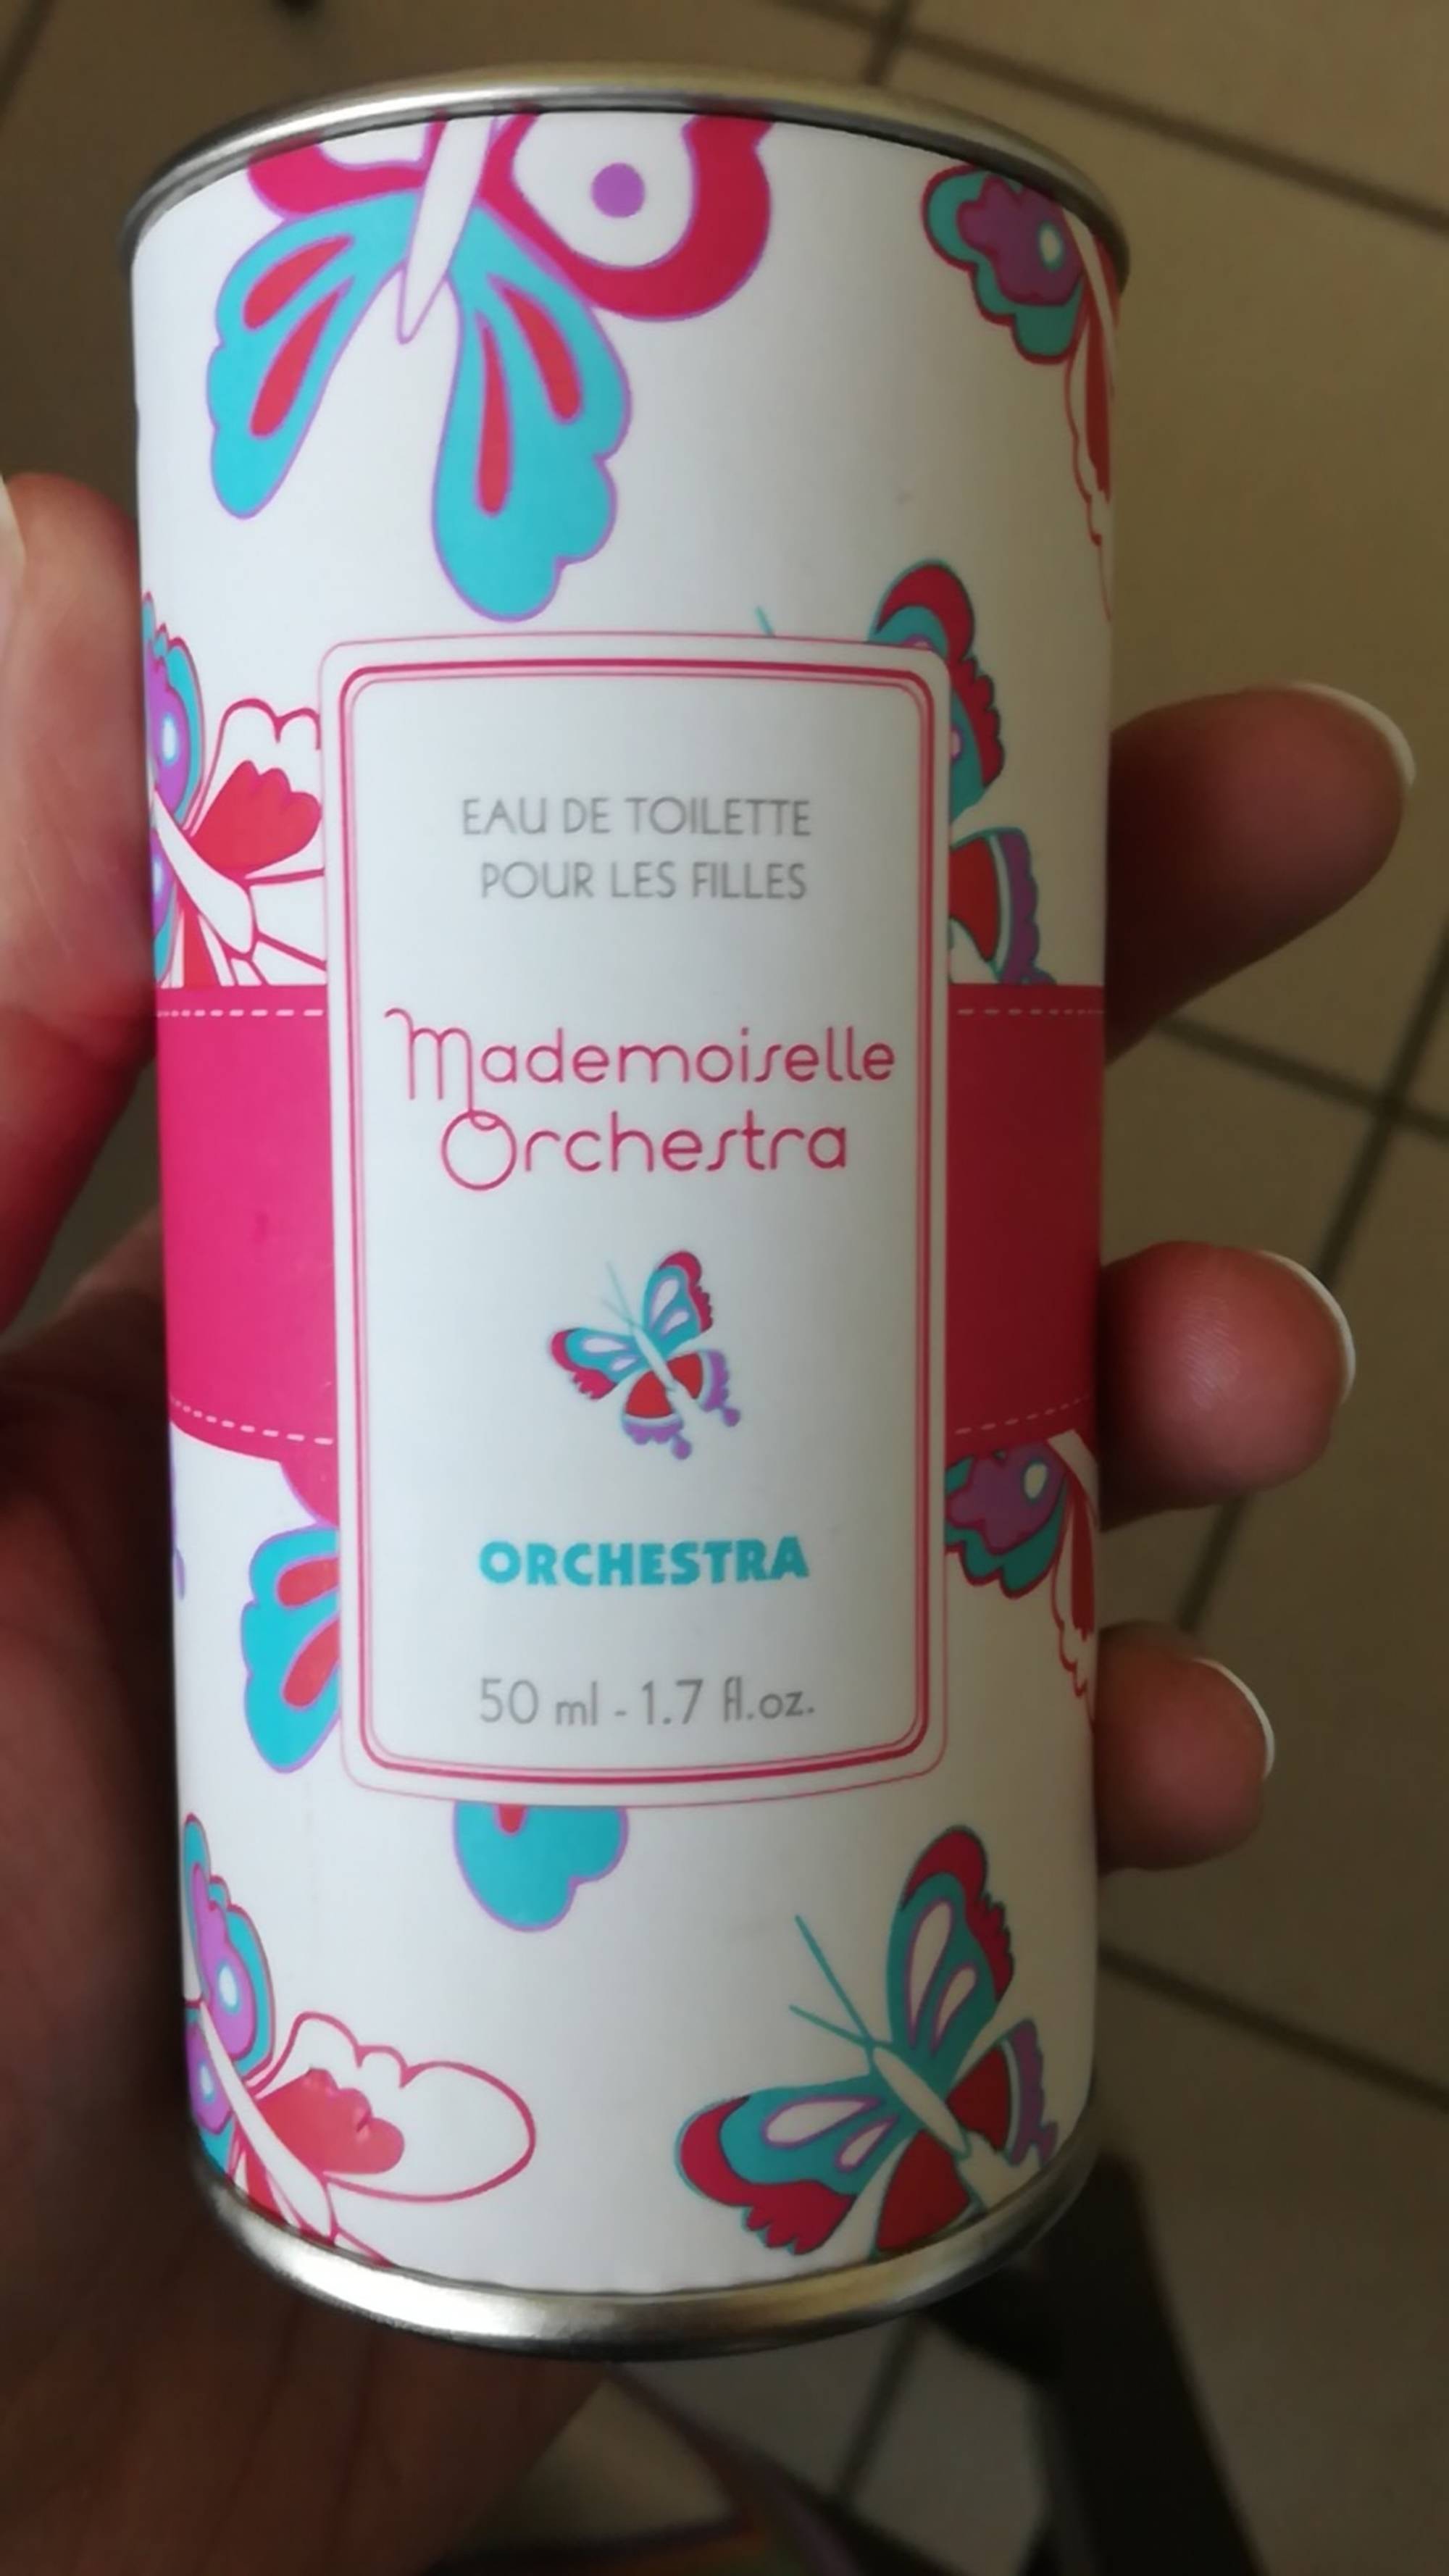 ORCHESTRA - Mademoiselle orchestra - Eau de toilette pour les filles